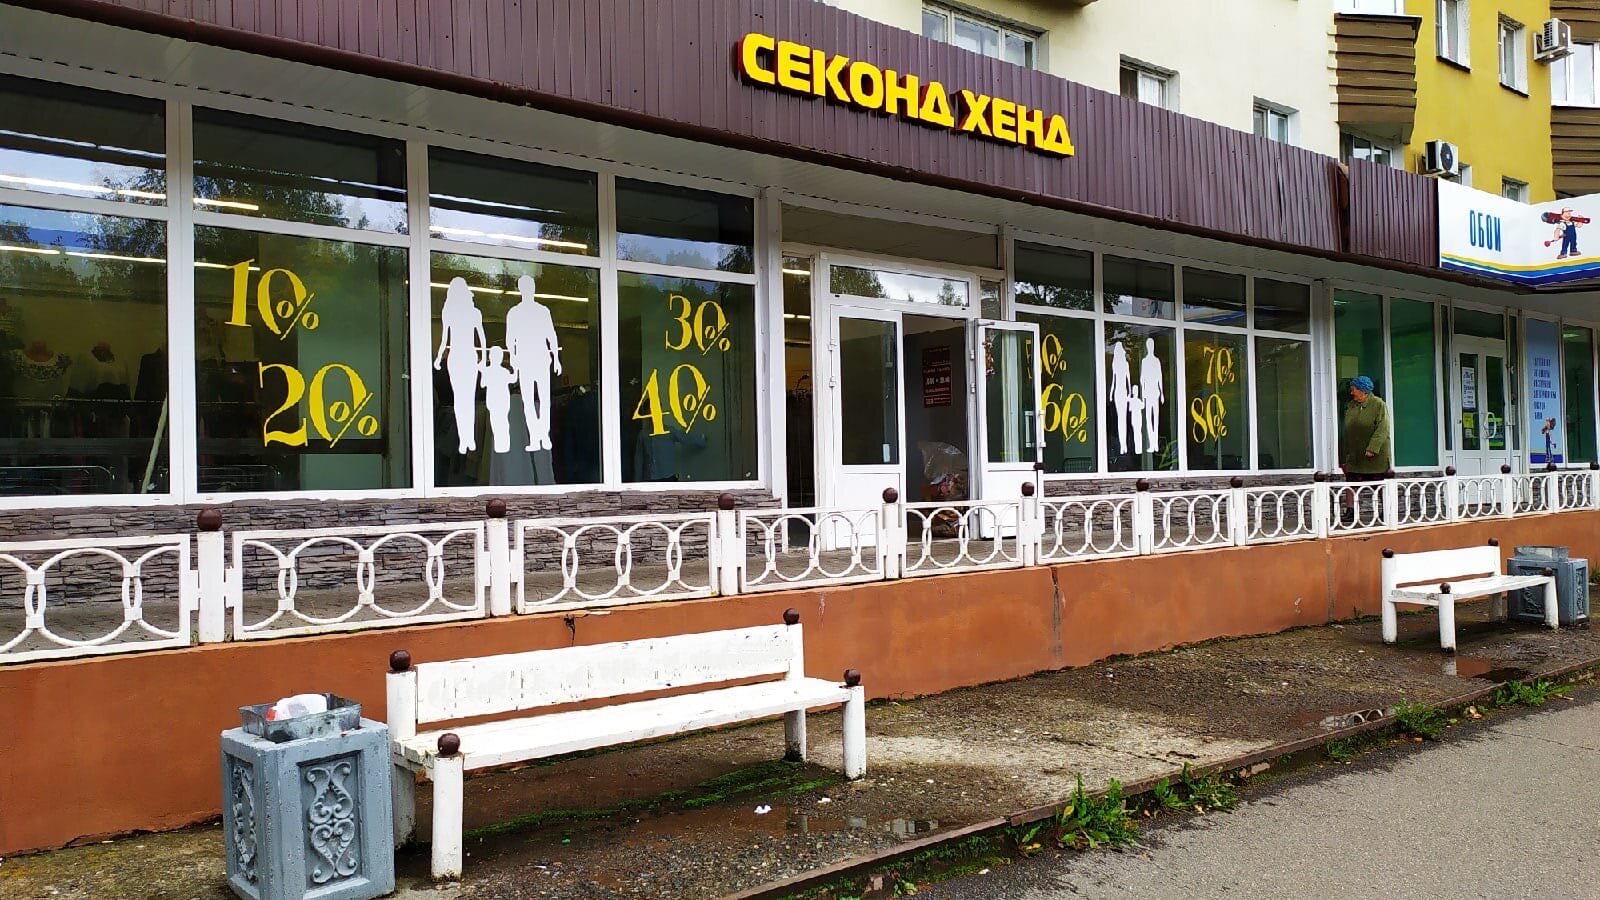 Магазин Эксперт Великий Новгород